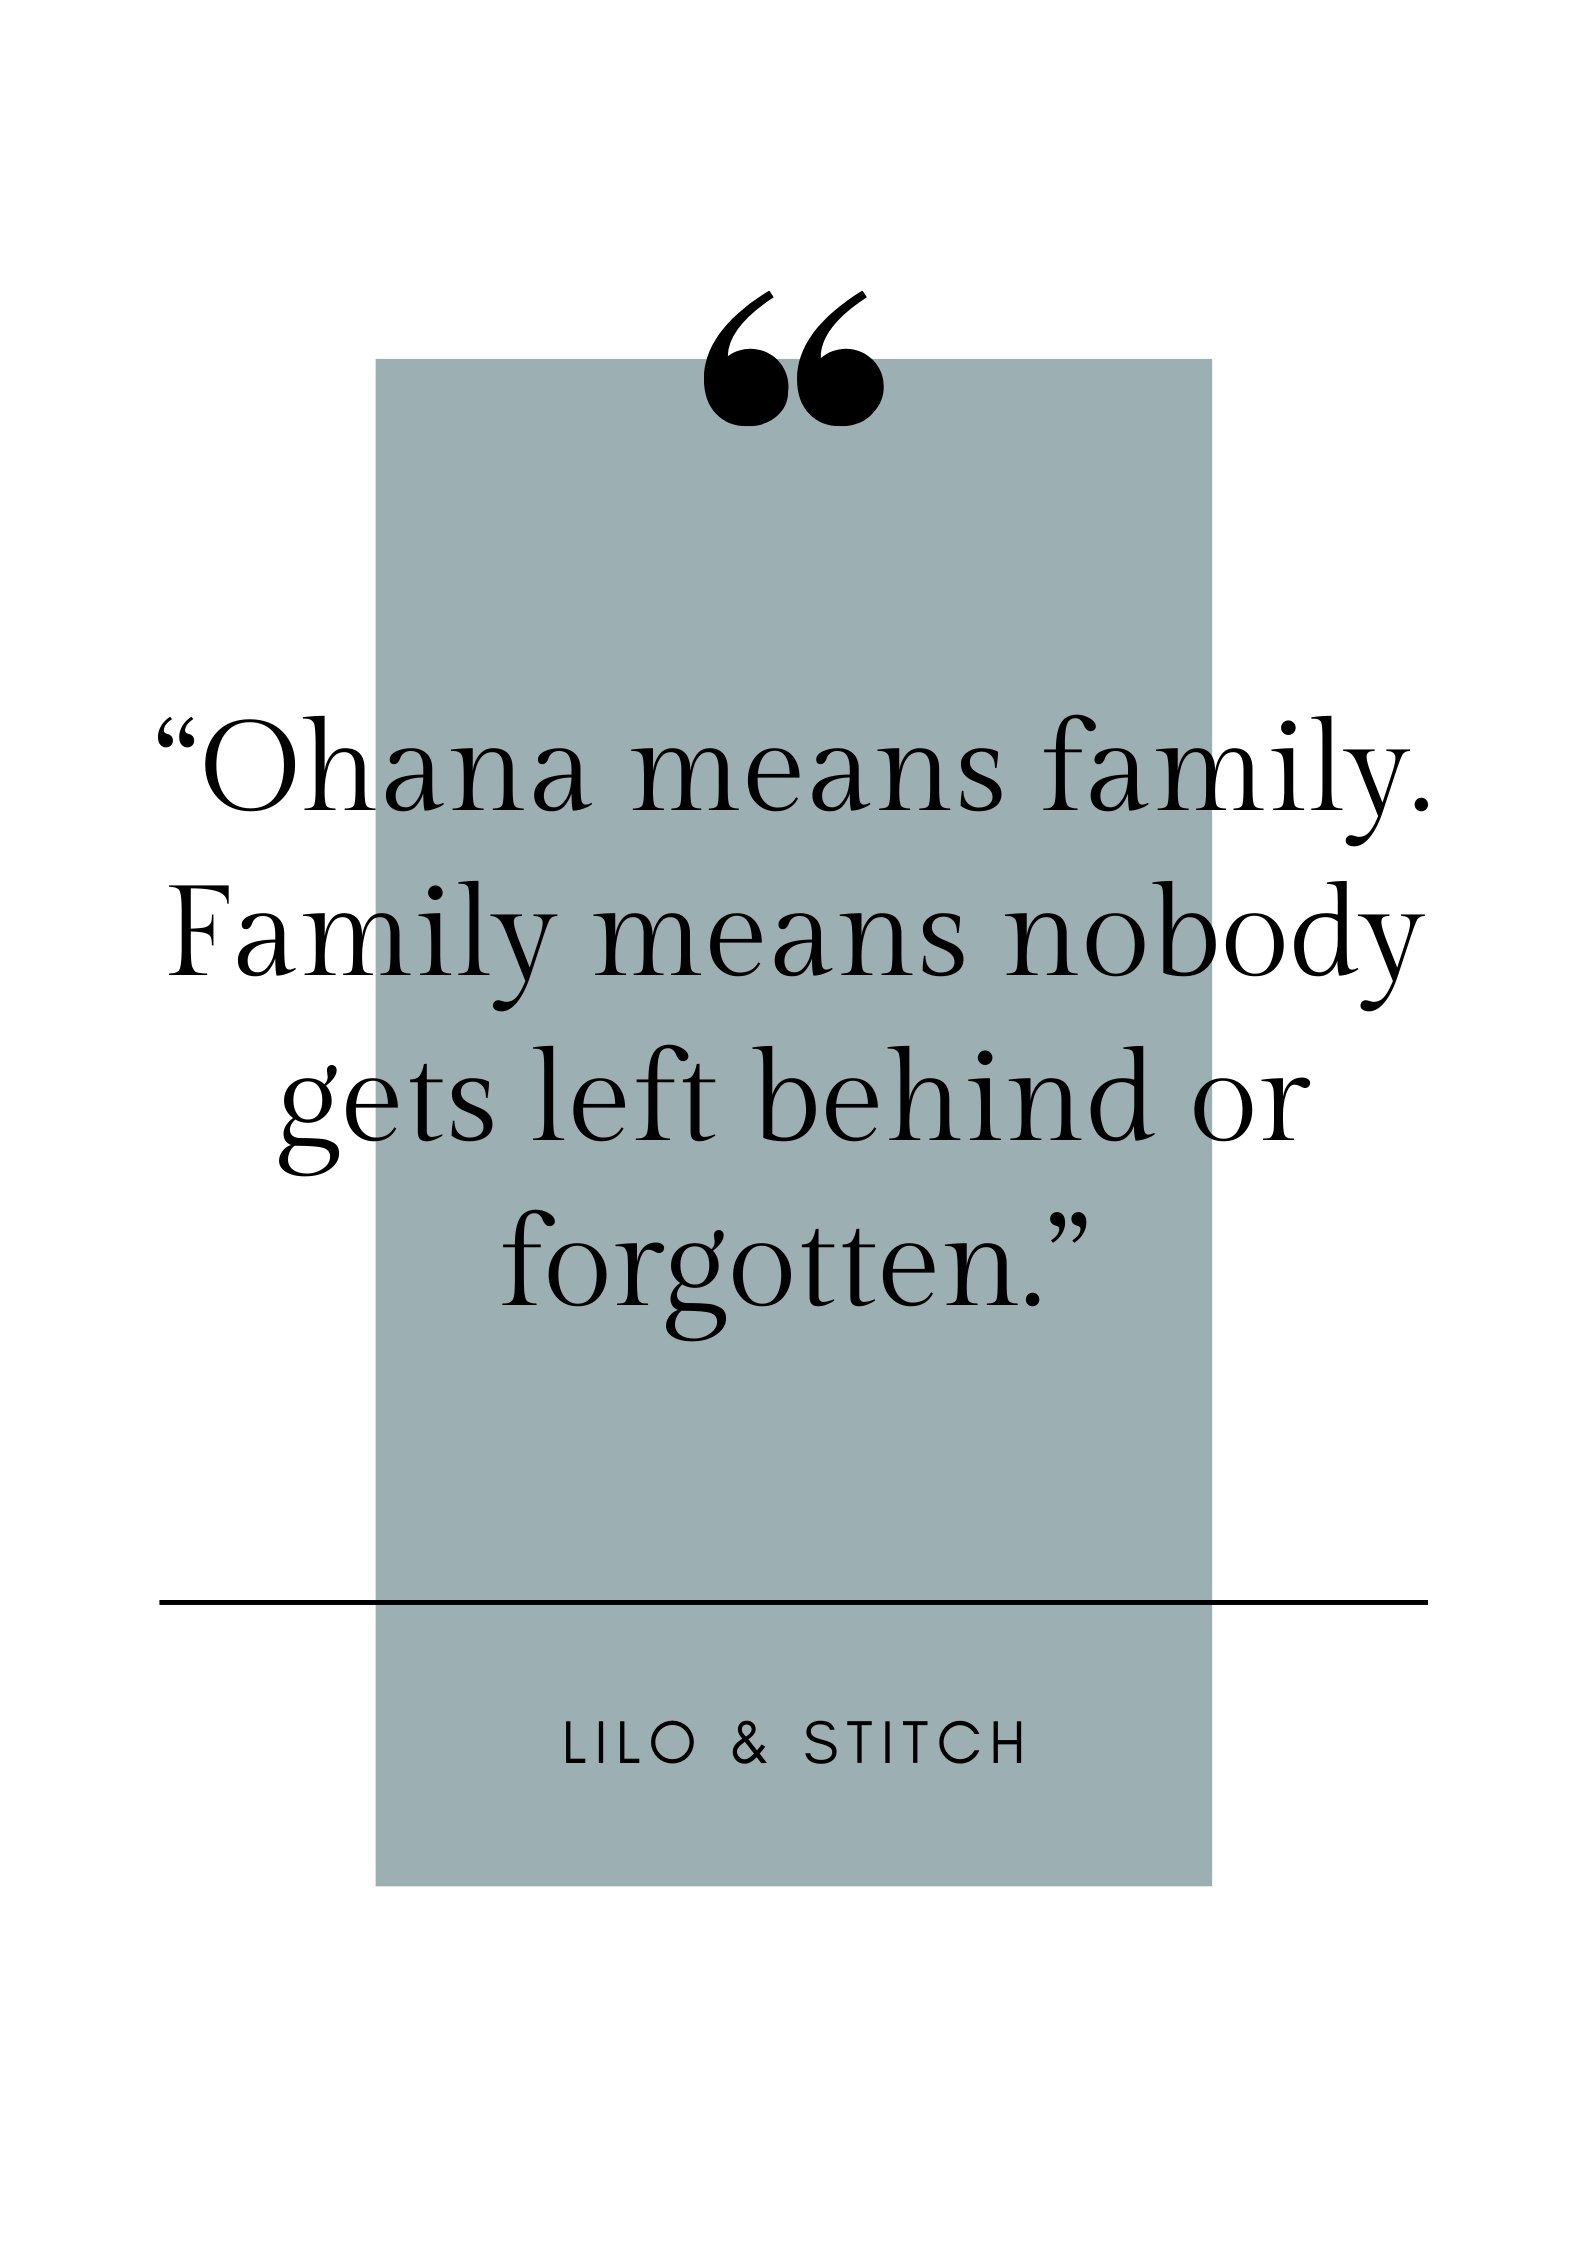 lilo and stitch quote